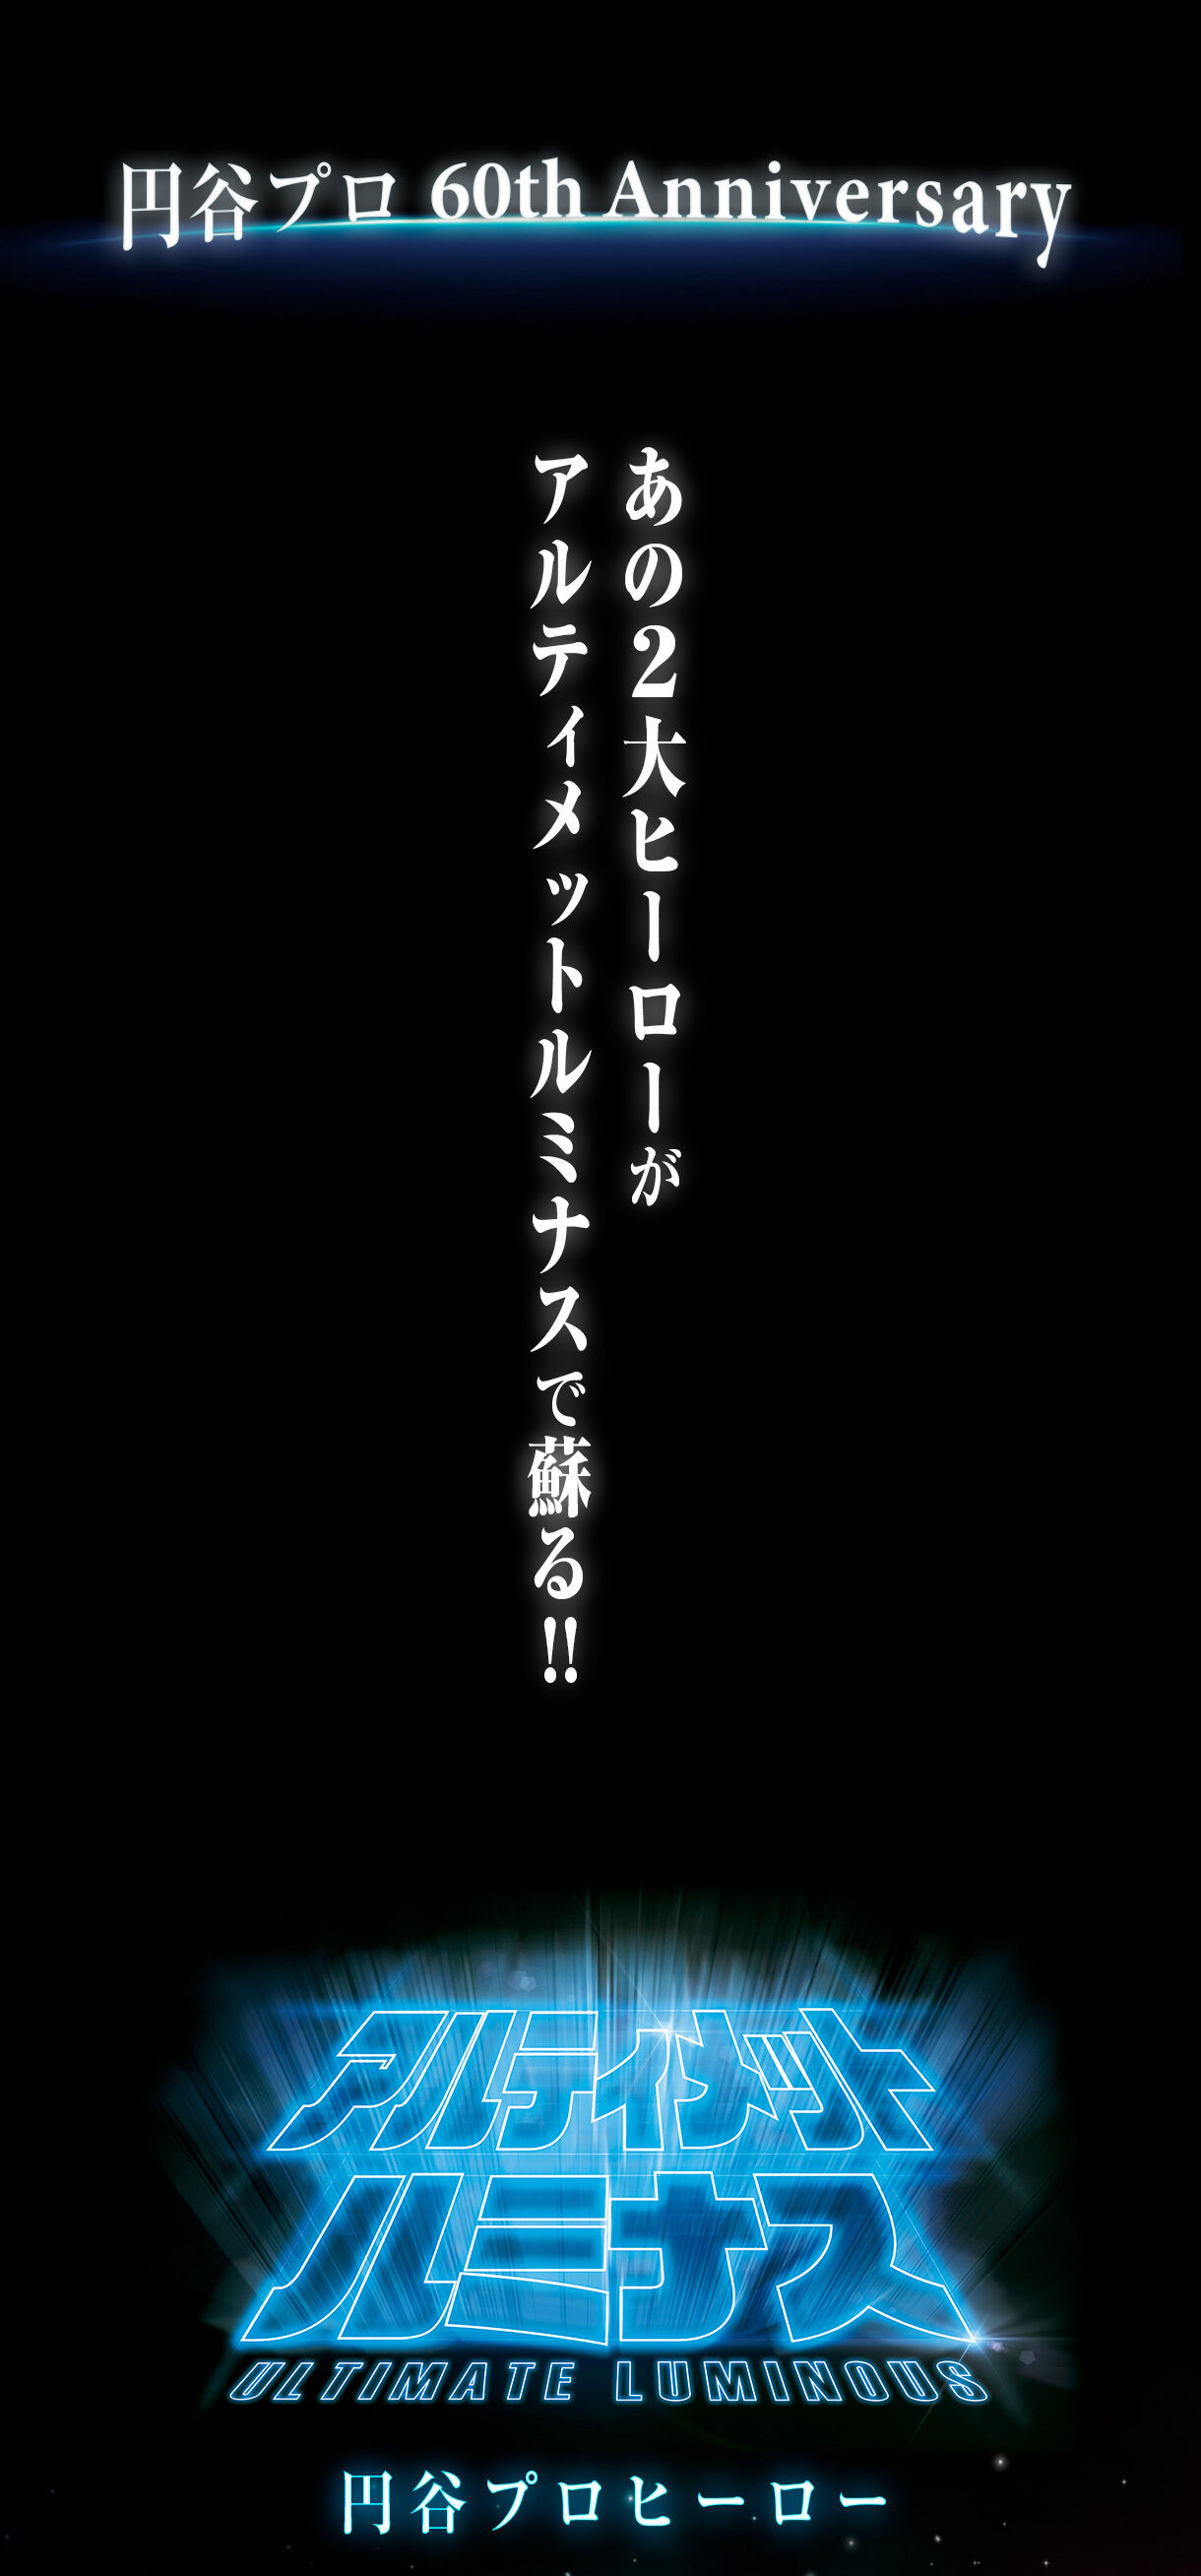 【販売終了済み】プレミアムバンダイ限定 アルティメットルミナス 円谷プロヒーロー